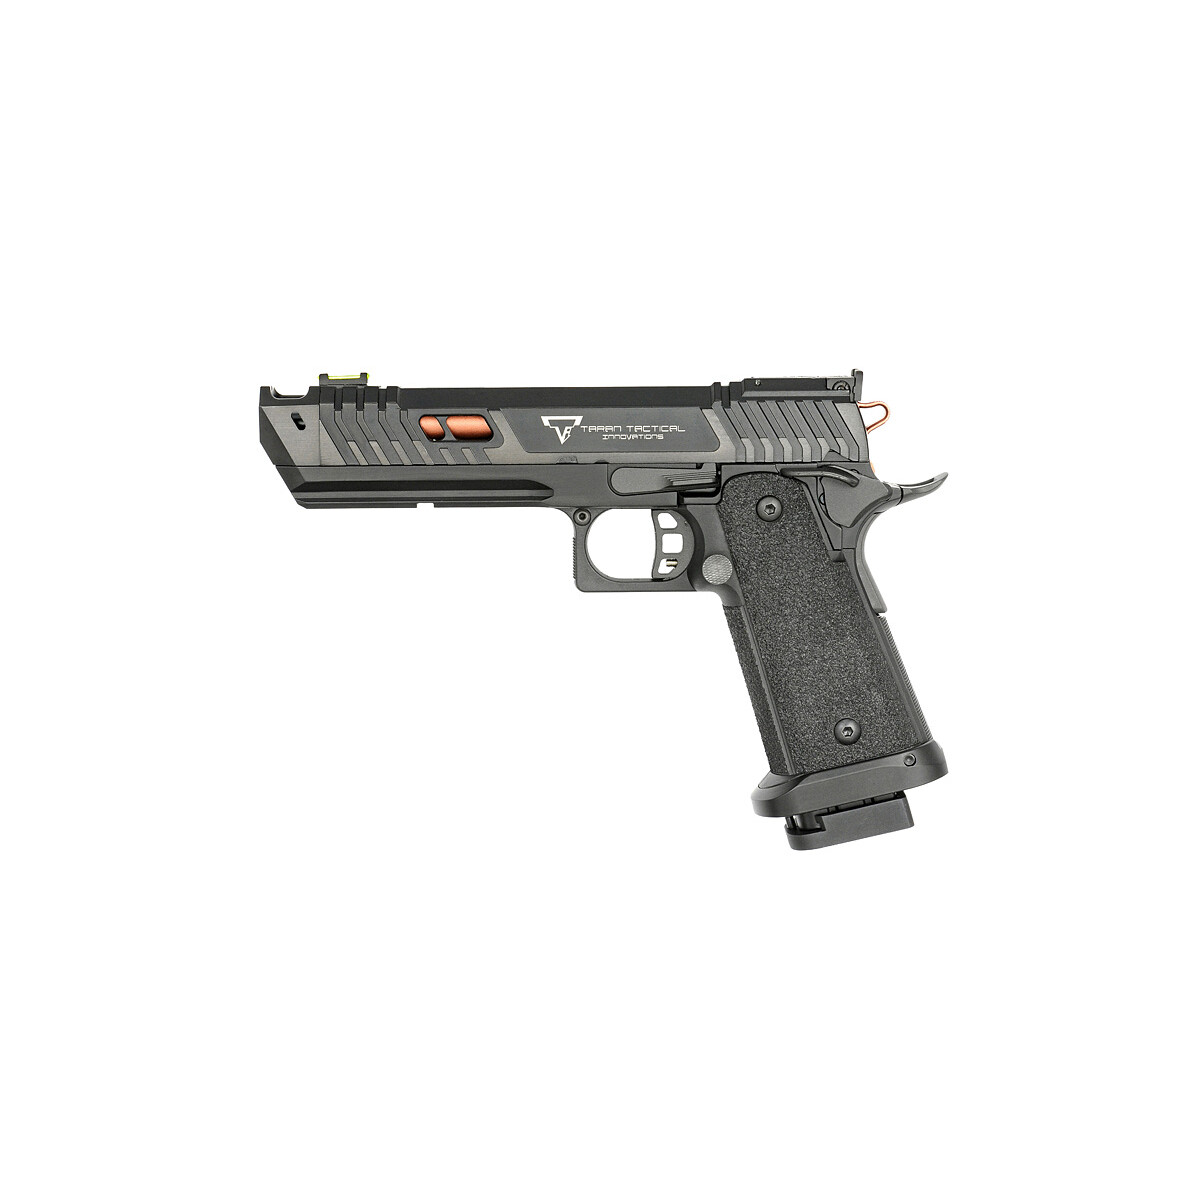 R614 TTI JW4 Pit Viper GBB Pistol [Army Armament]